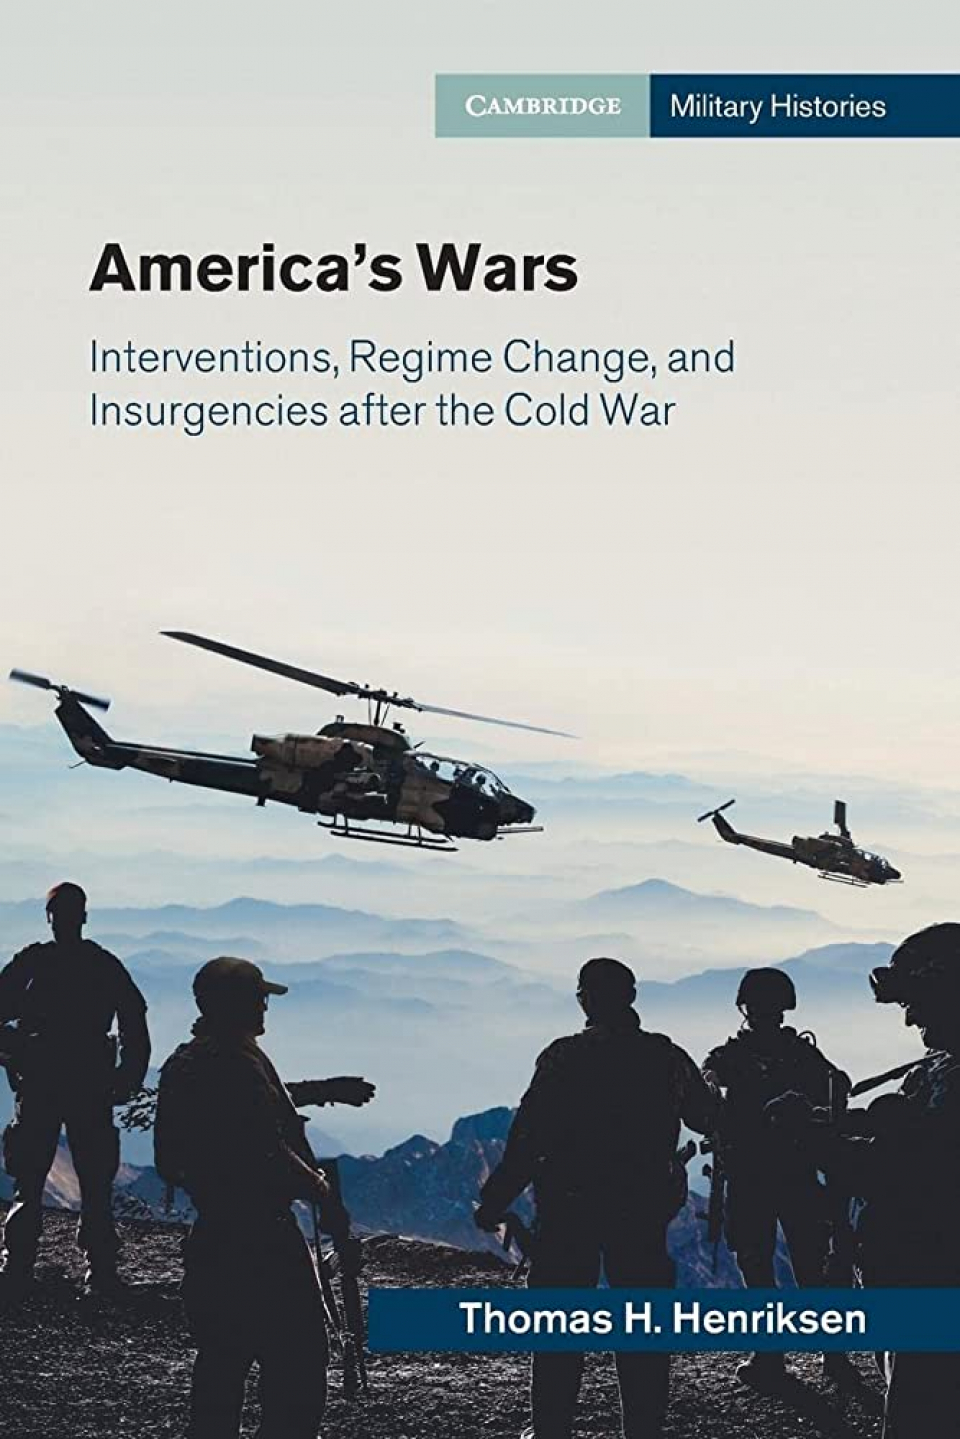 Book of Week: America's Wars